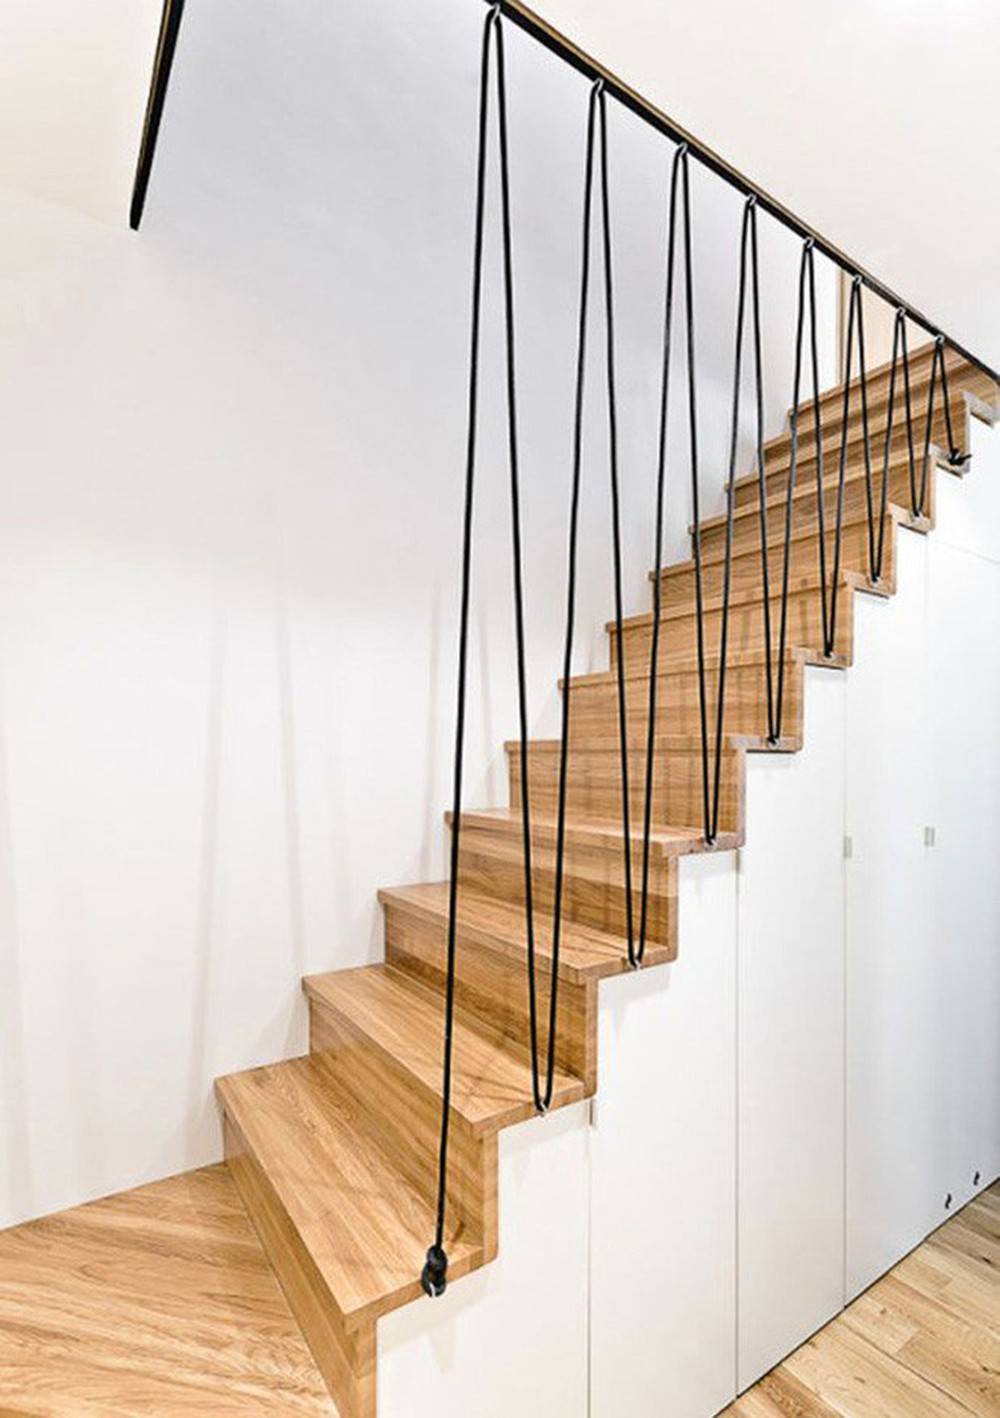 Cầu thang sử dụng dây cáp thay cho tay vin cầu thang thông thường tạo sự thông thoáng, mới lạ cho ngôi nhà